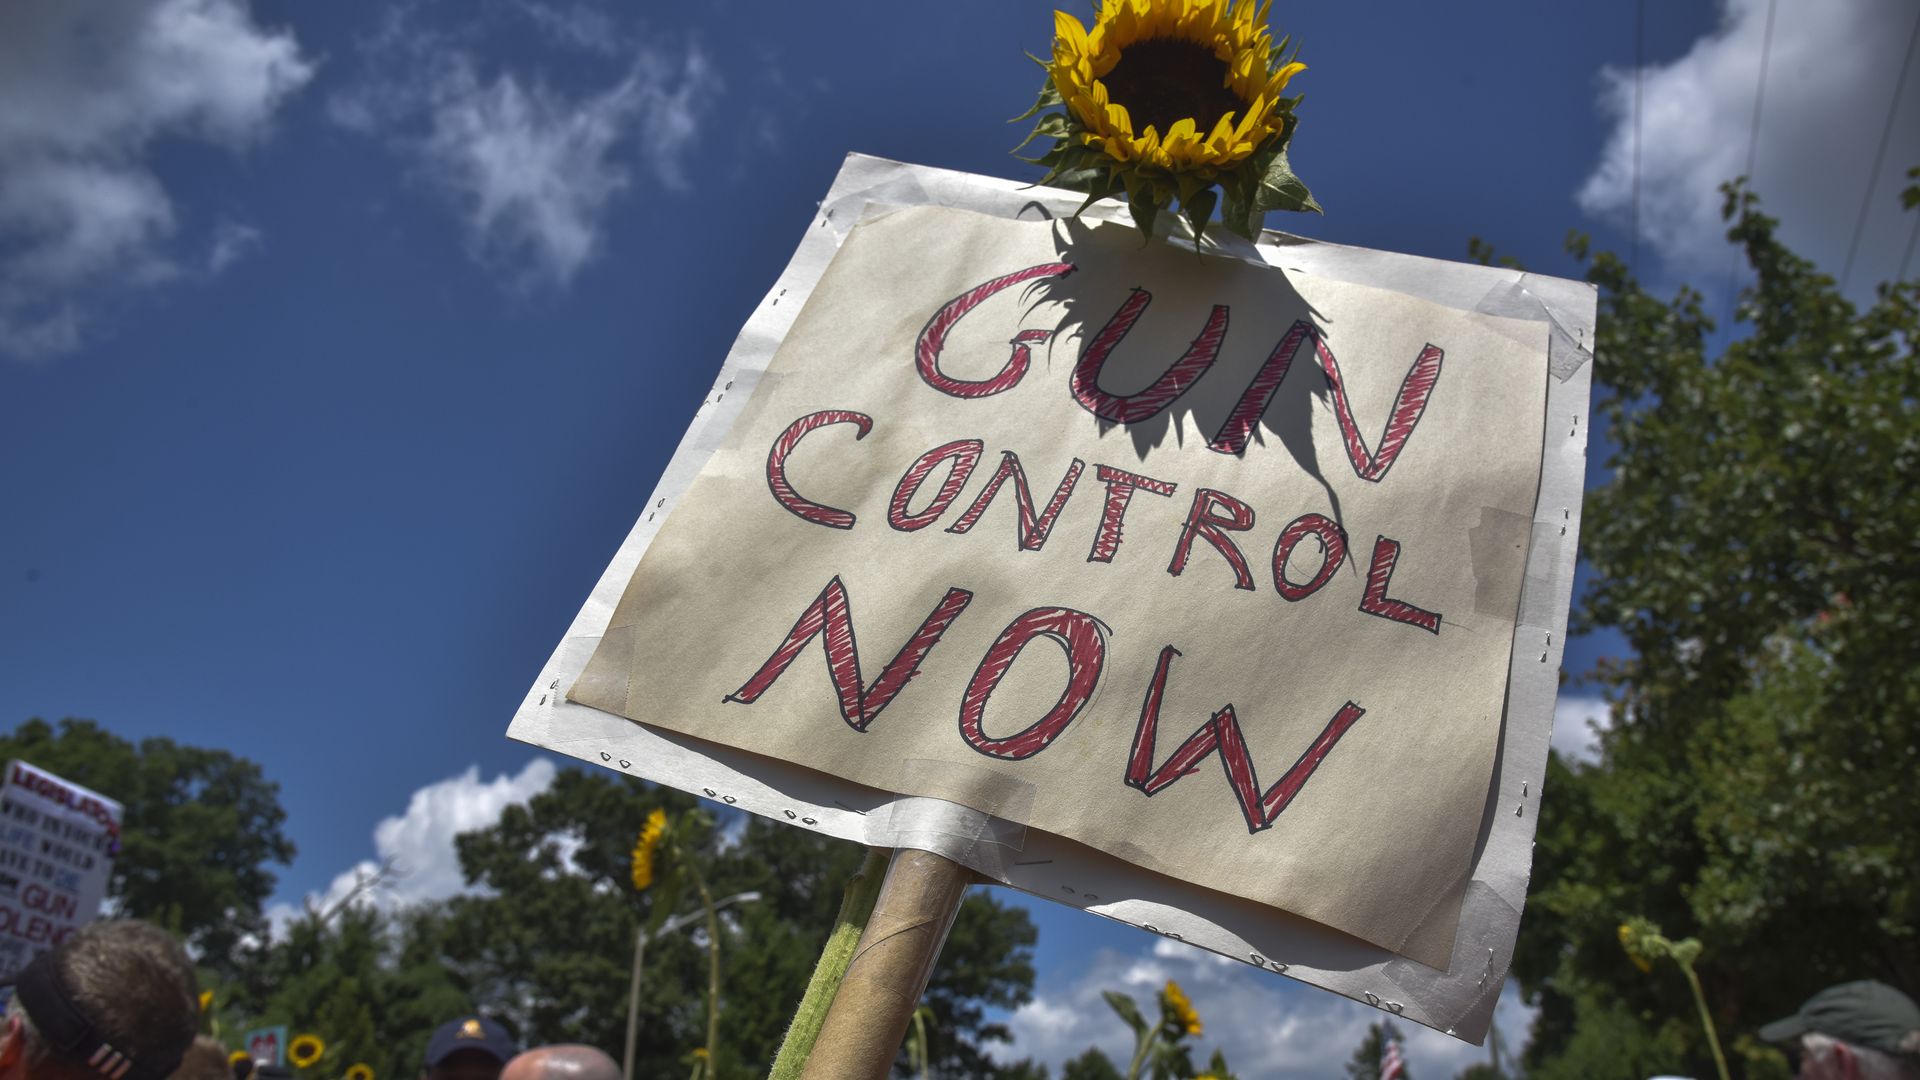 A gun control now sign